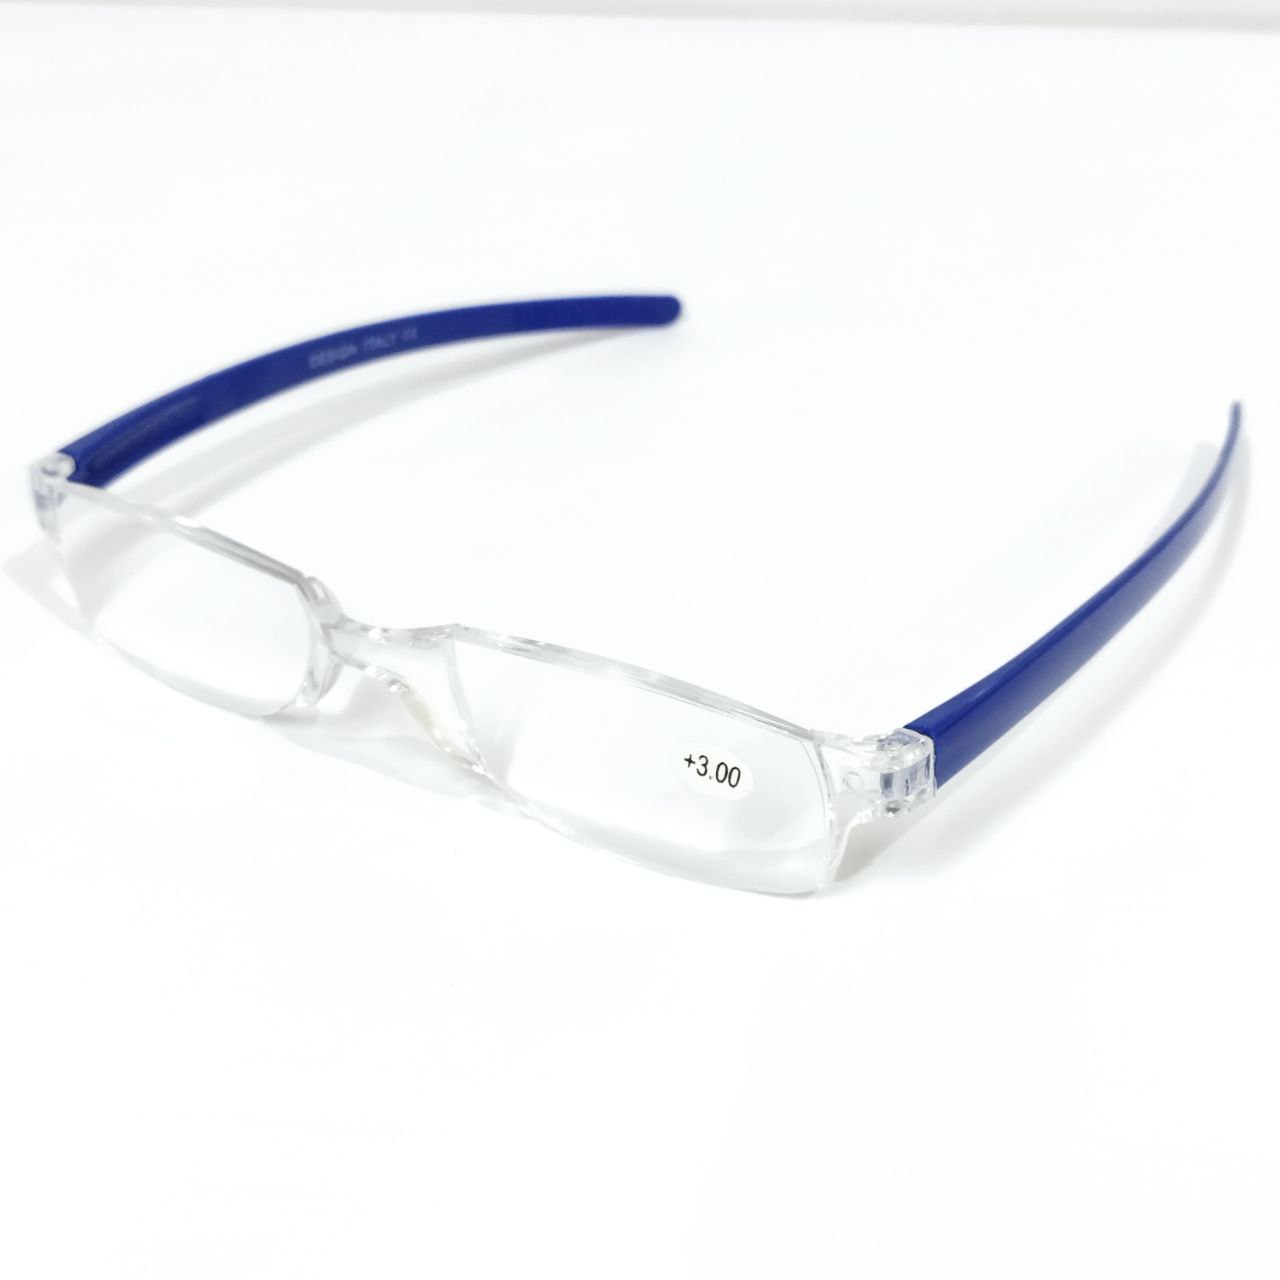 Blue Rimless Reading Glasses +3.00 Power for Men and Women